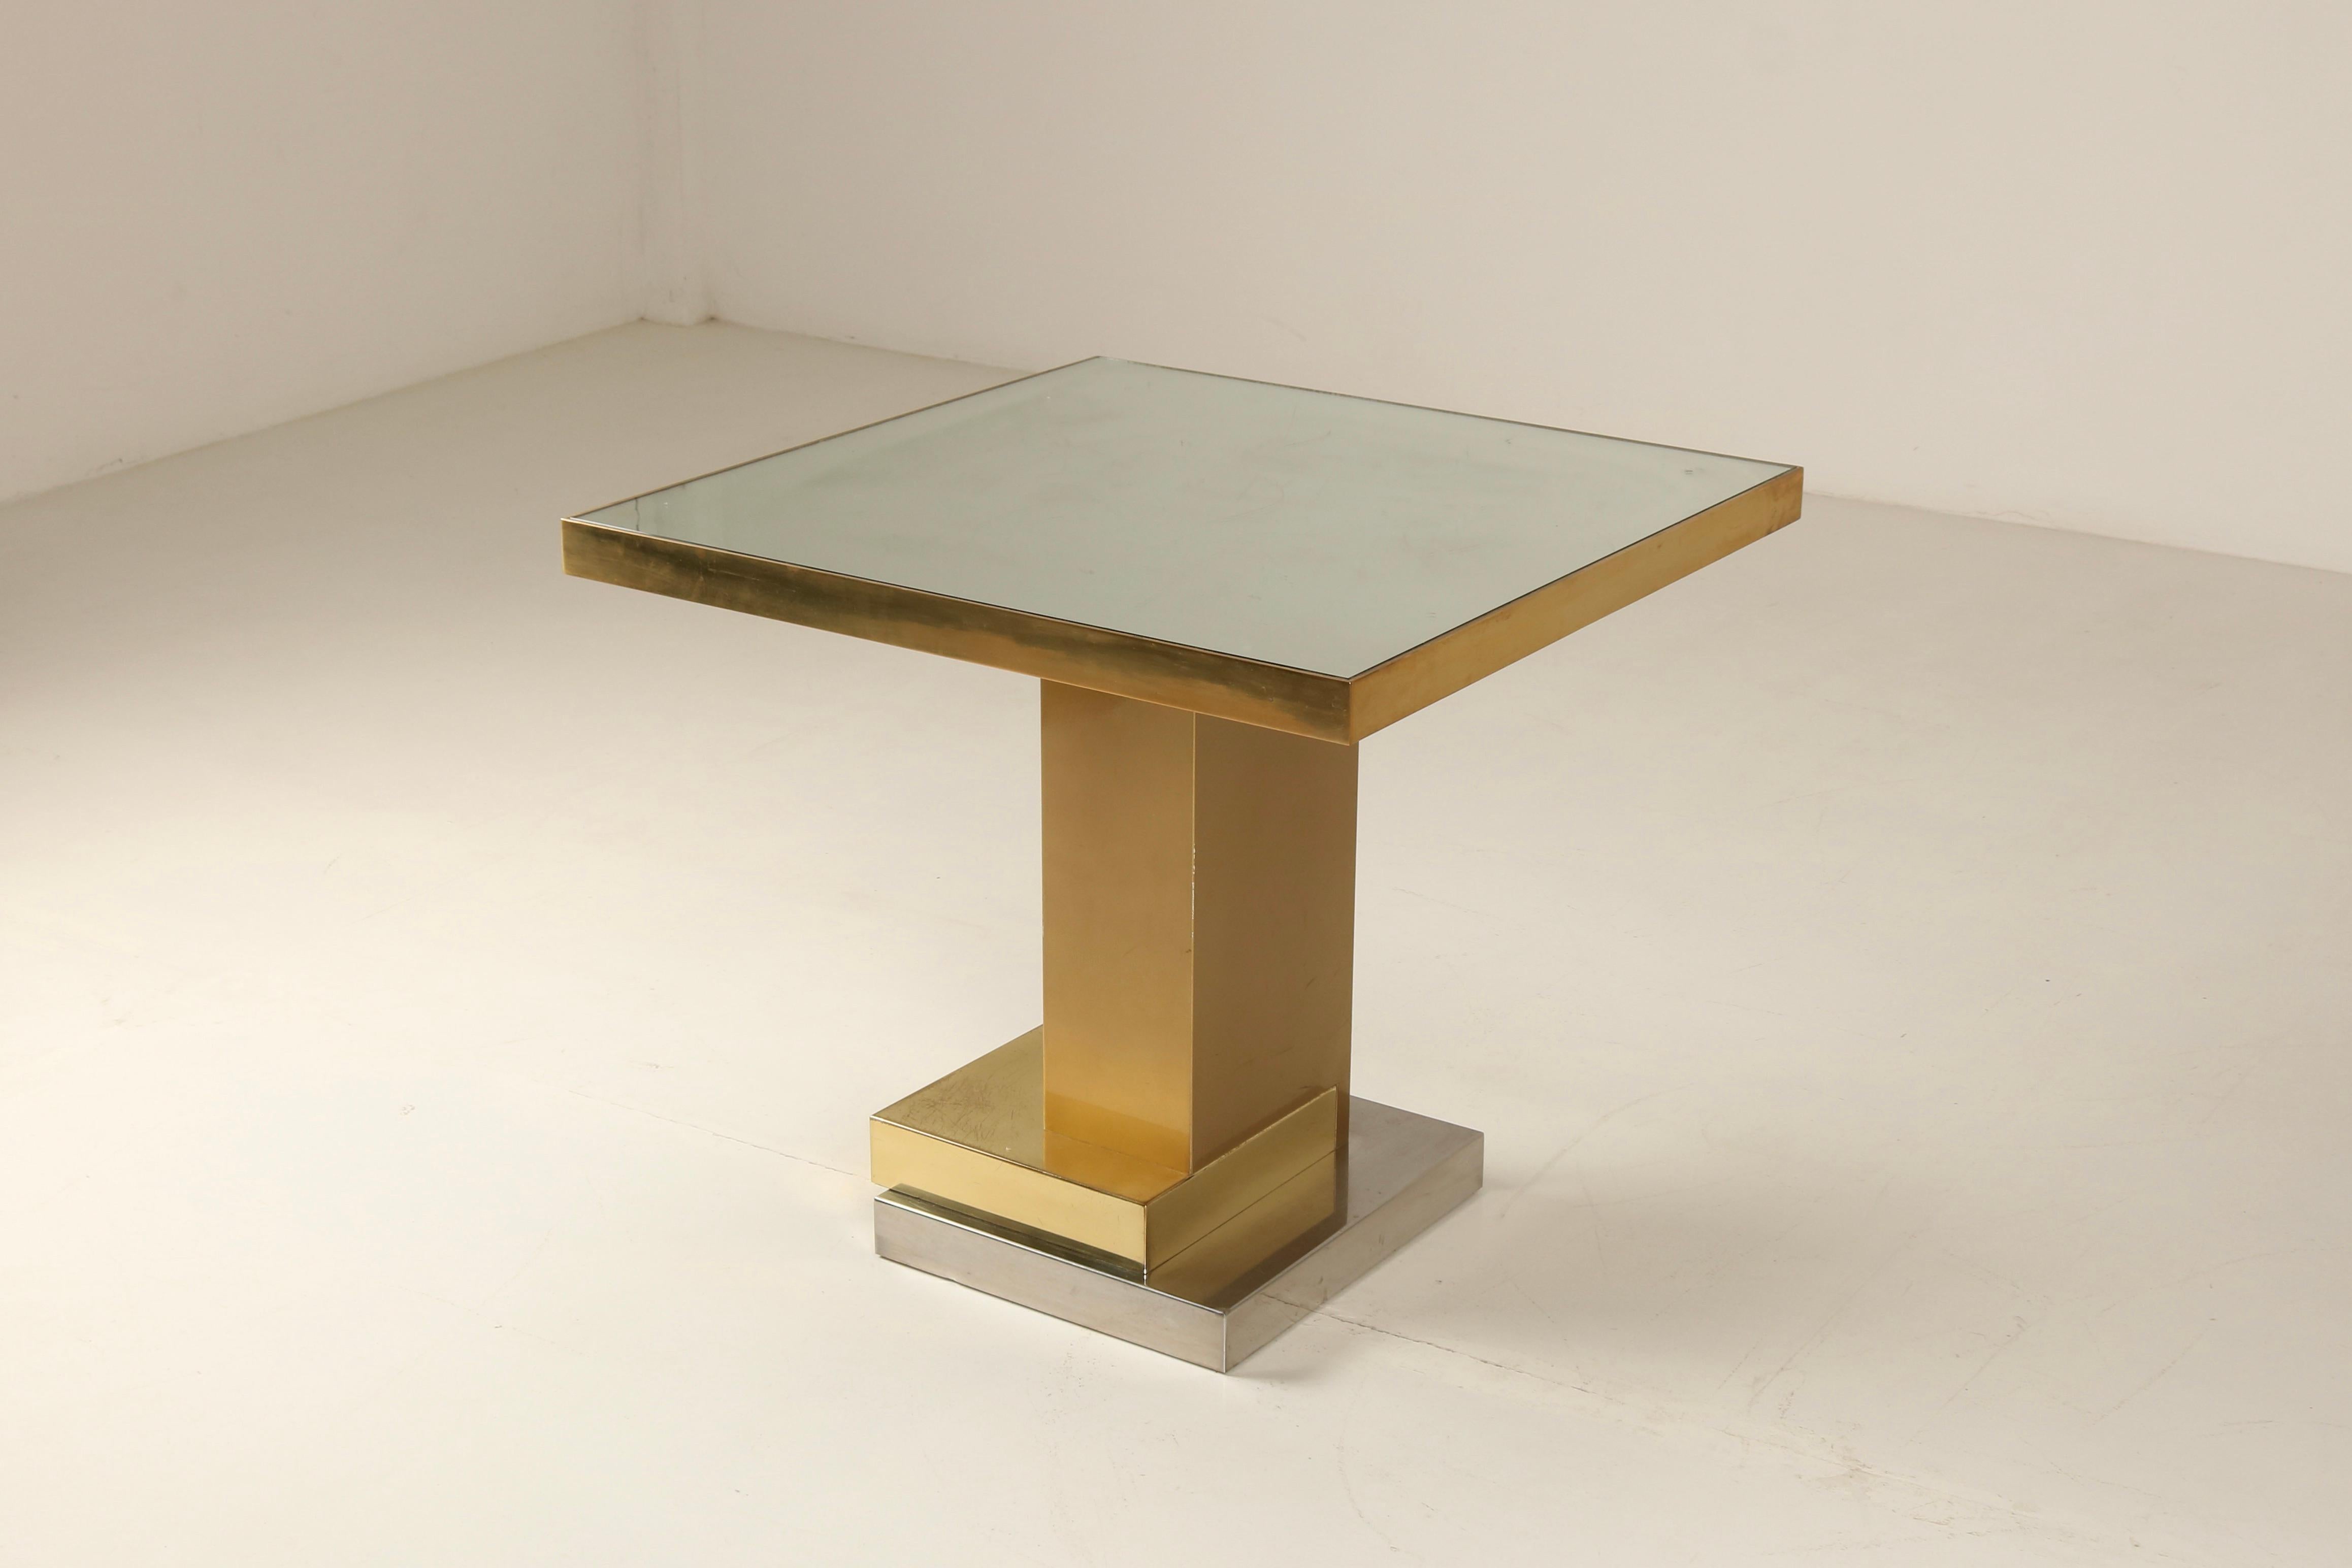 Cette table iconique en or de Ferruccio Laviani a été dessinée à l'origine en 2006 pour les intérieurs du légendaire restaurant Gold de Dolce & Gabbana. Ses nuances polychromes en or et ses lignes géométriques et sophistiquées en font le décor idéal